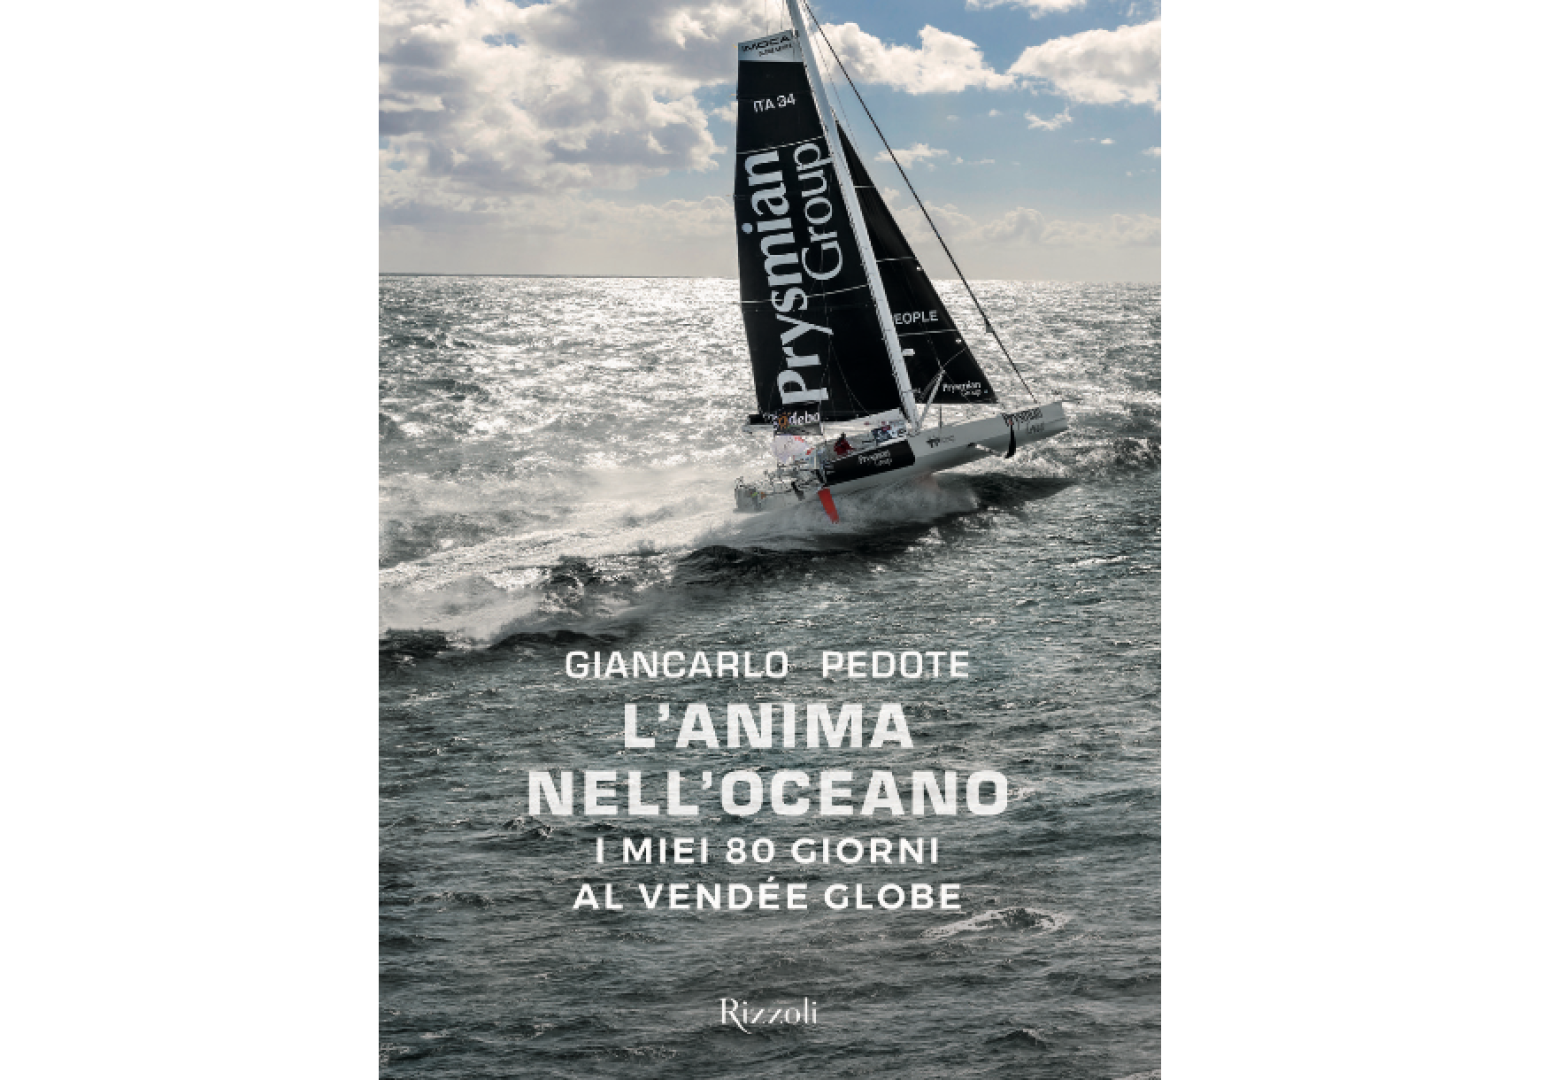 Il libro 'L'anima nell'oceano' di Giancarlo Pedote edito da Rizzoli, Gruppo Mondadori.